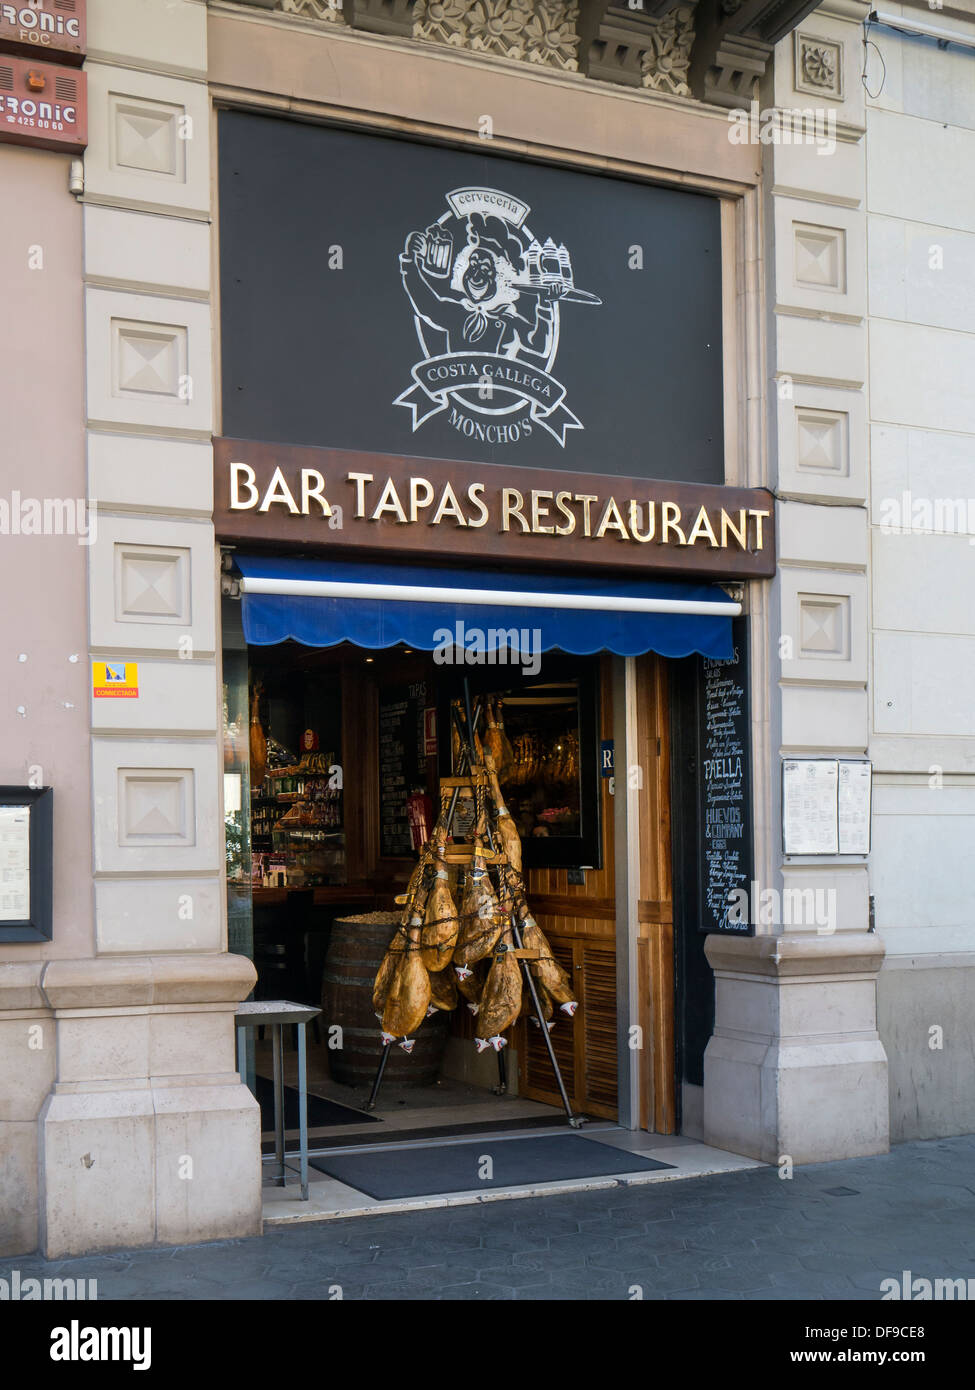 BARCELONE, ESPAGNE - 12 SEPTEMBRE 2013 : jambons accrochés à l'entrée du restaurant Tapas Bar dans le quartier Eixample Banque D'Images